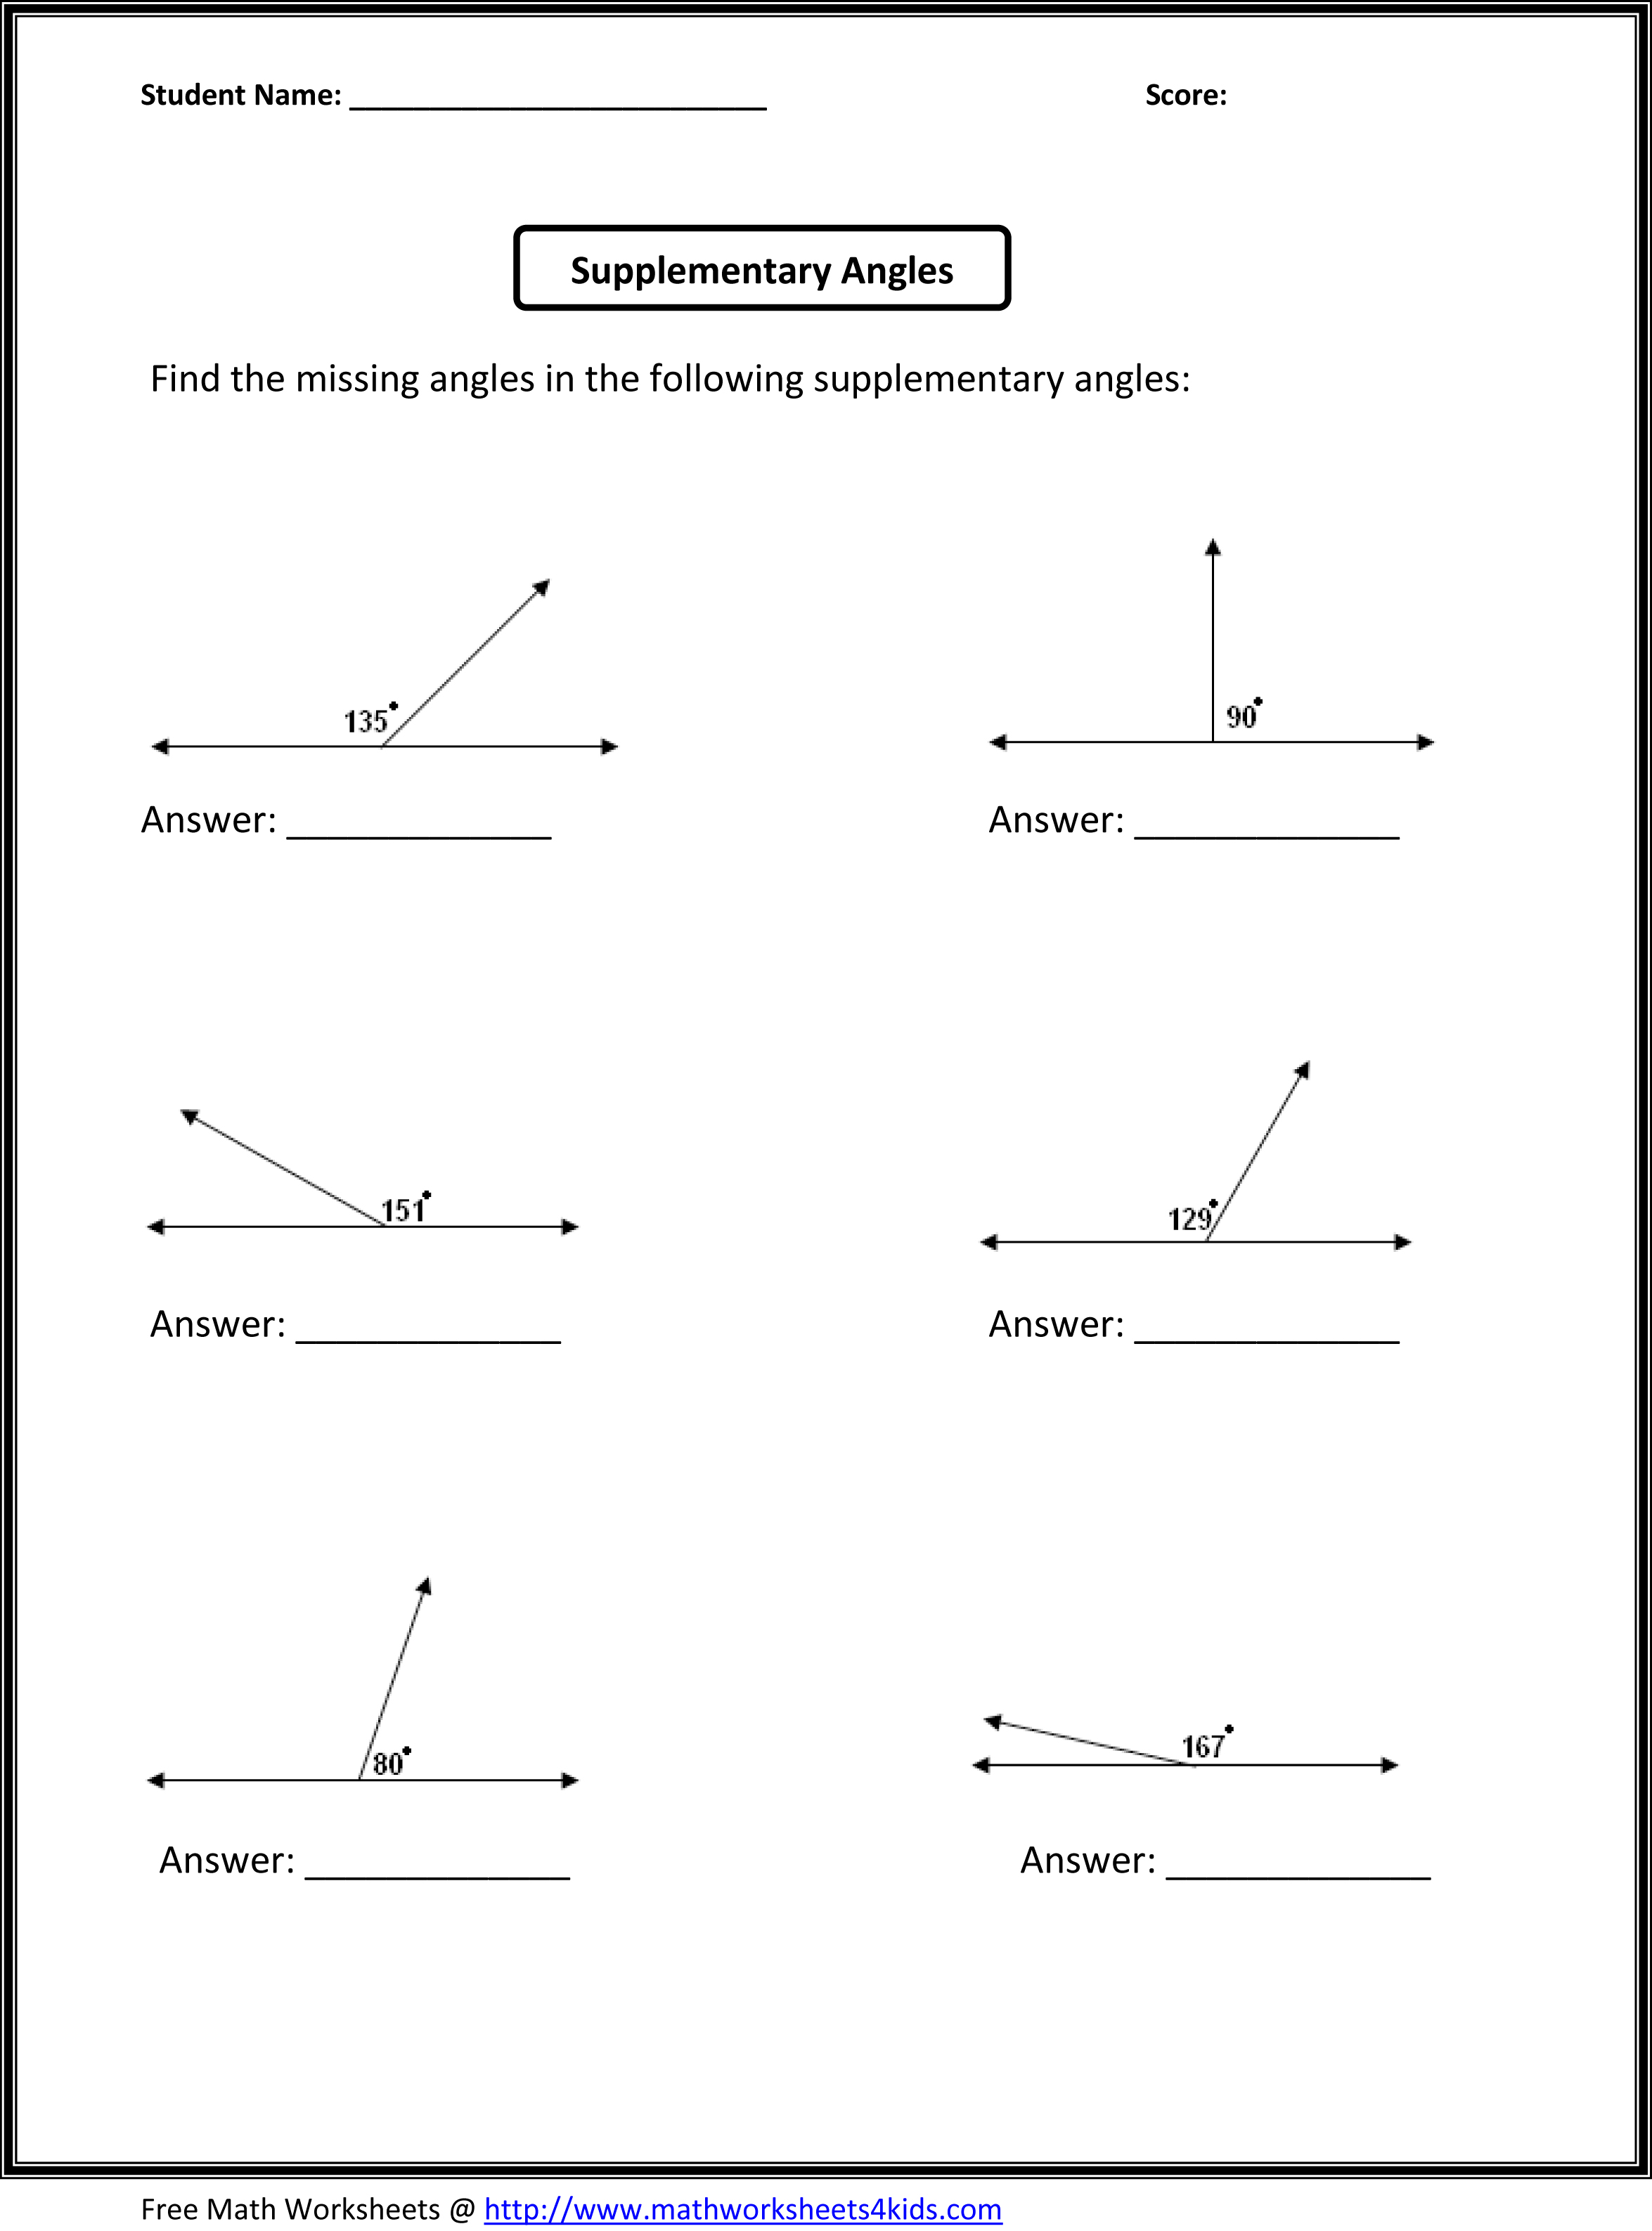 14 Best Images of 6 Grade Algebra Worksheets - 8th Grade ...